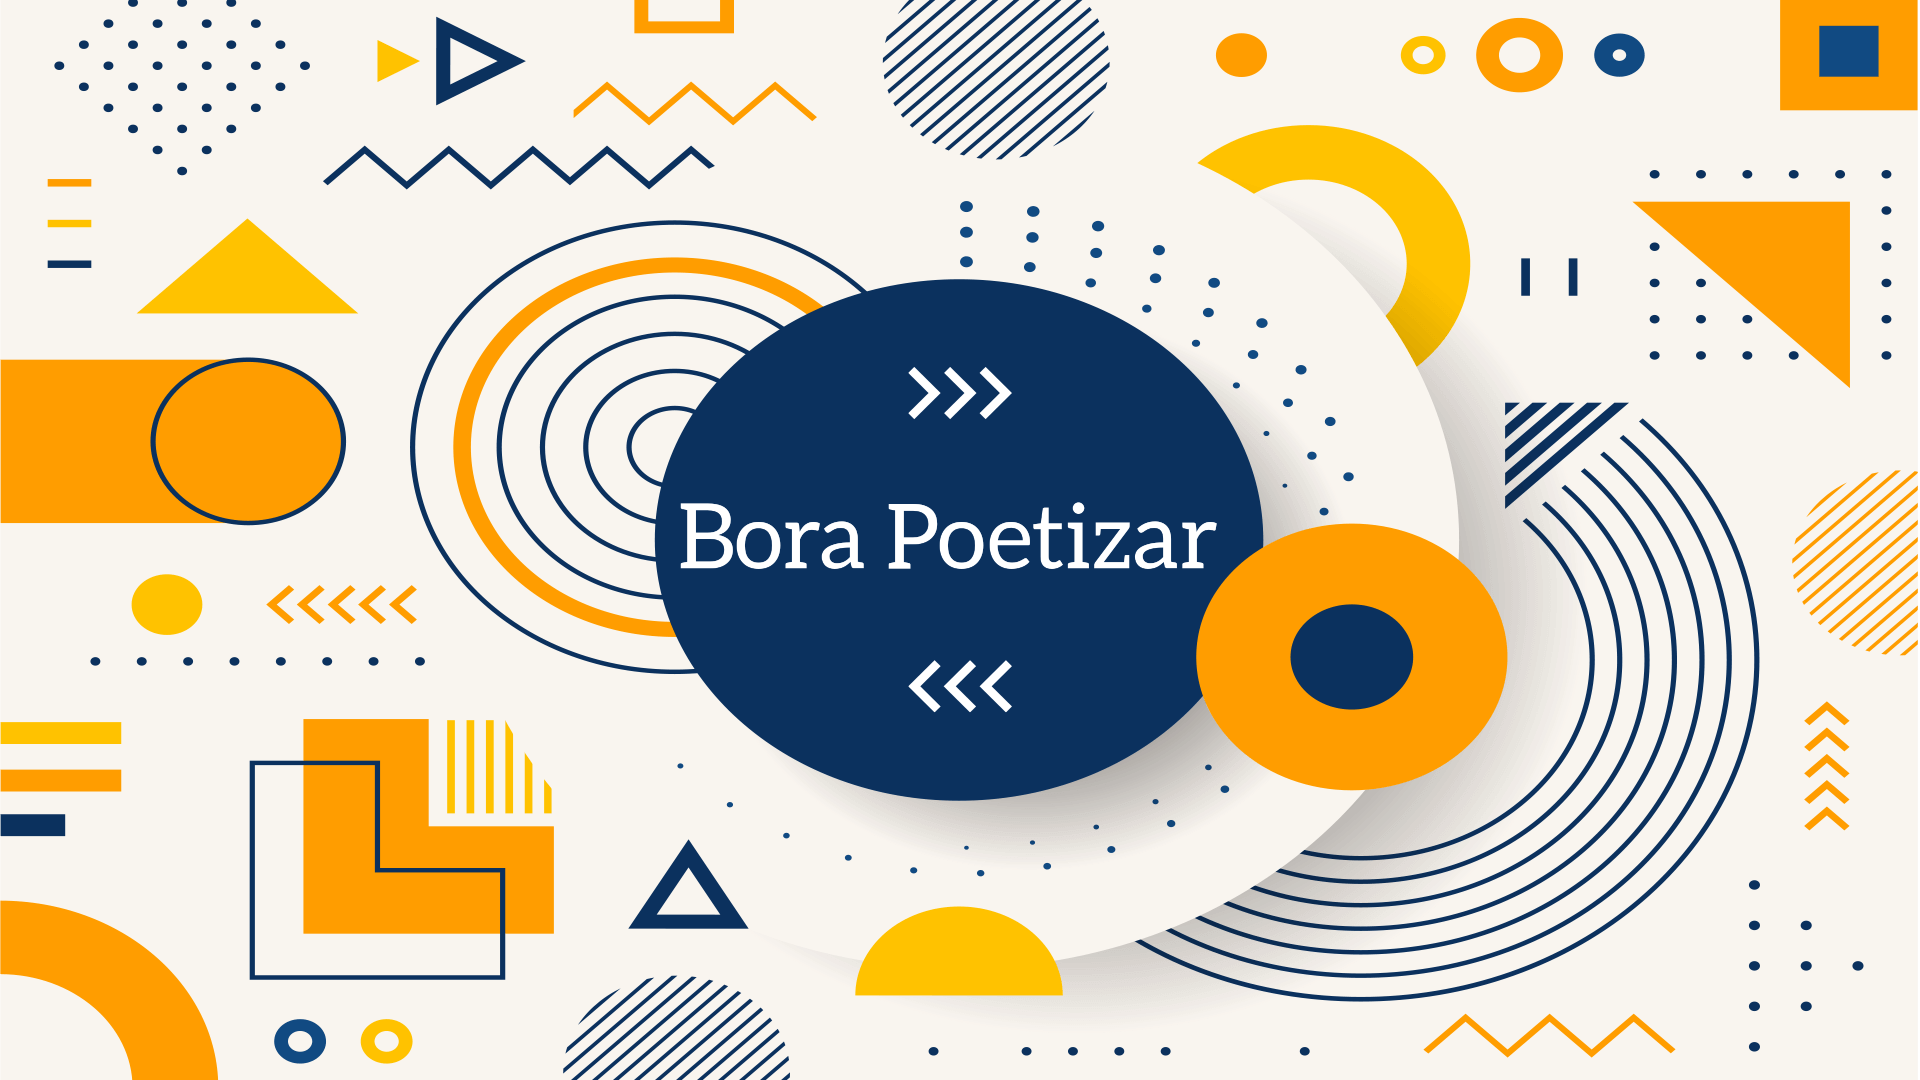 Bora Poetizar